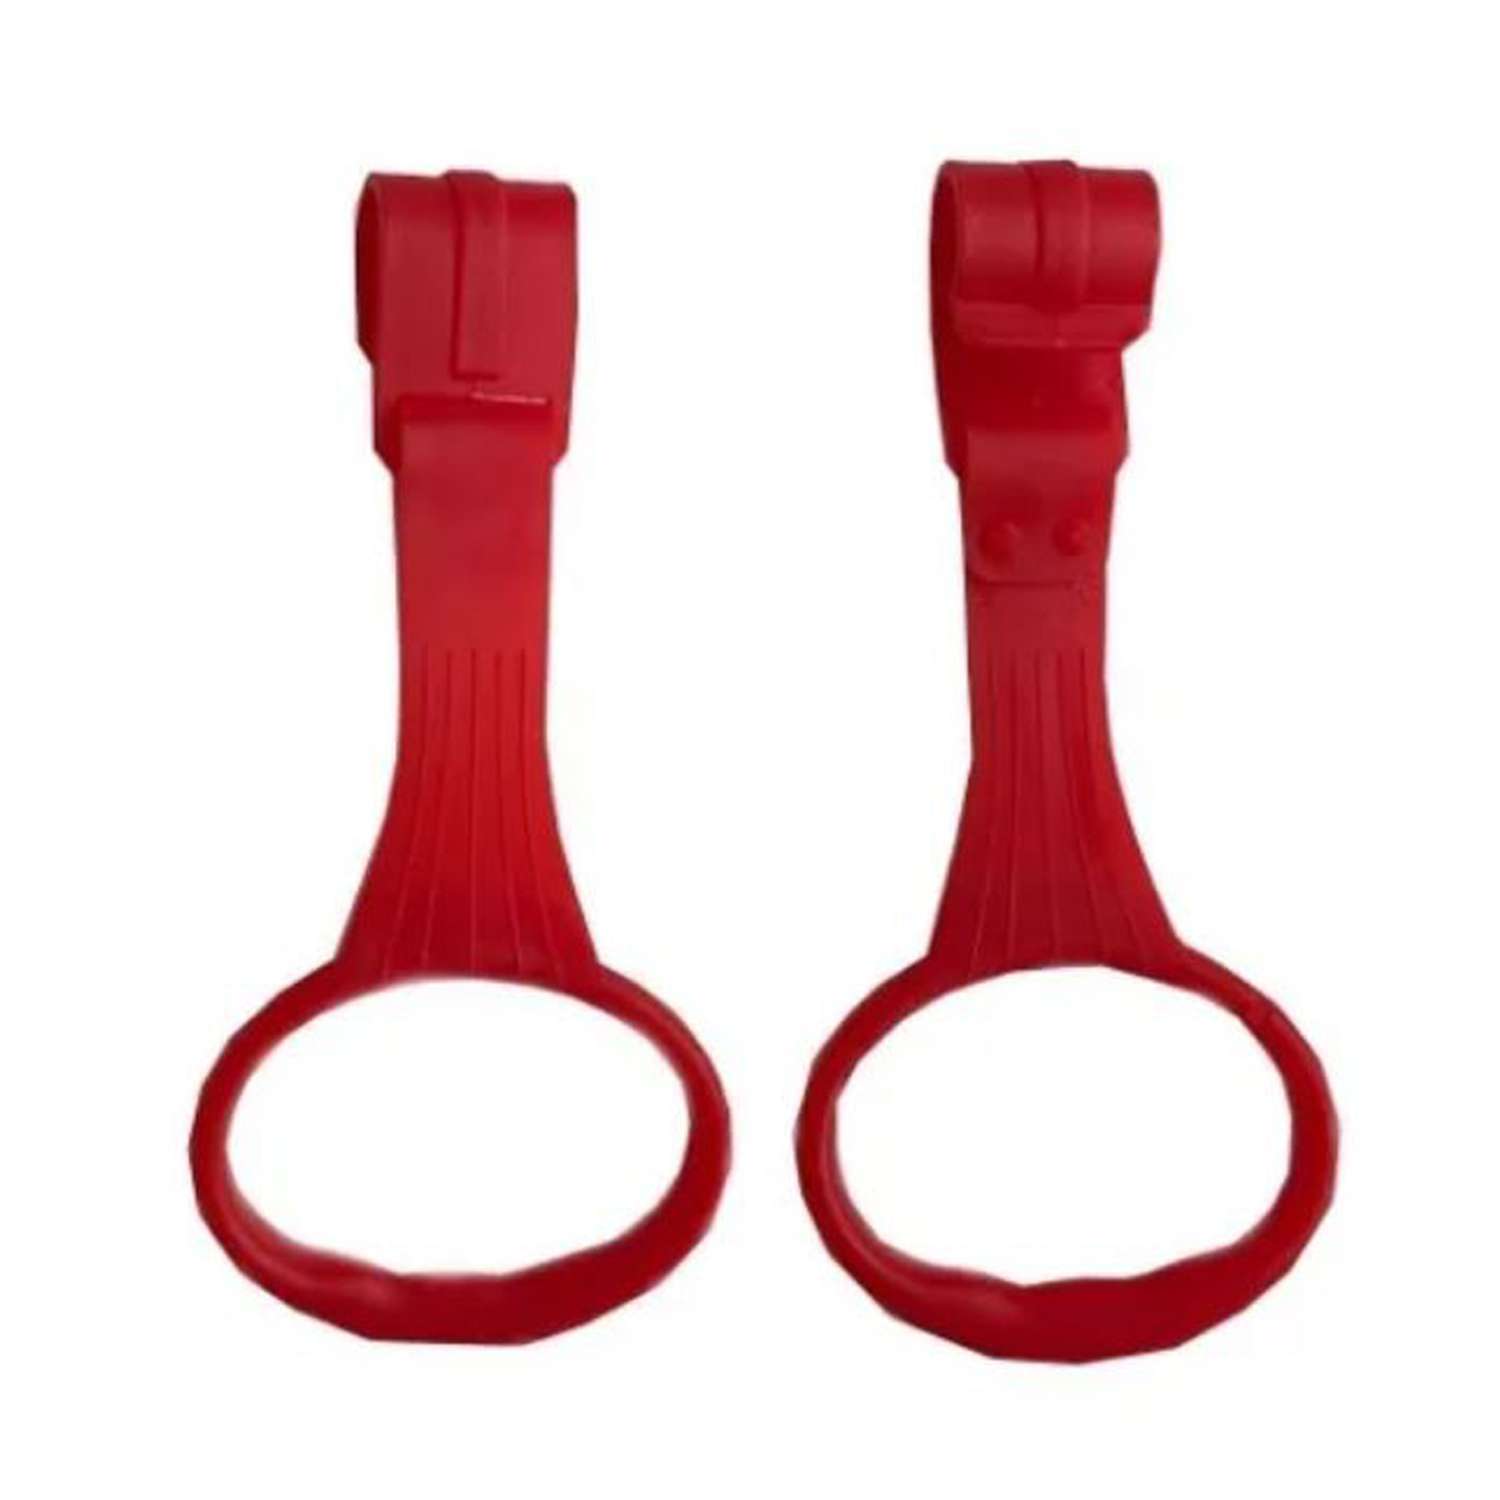 Пластиковые кольца Floopsi для манежа или барьера подвесные 2 шт kolso-2pc-red - фото 1